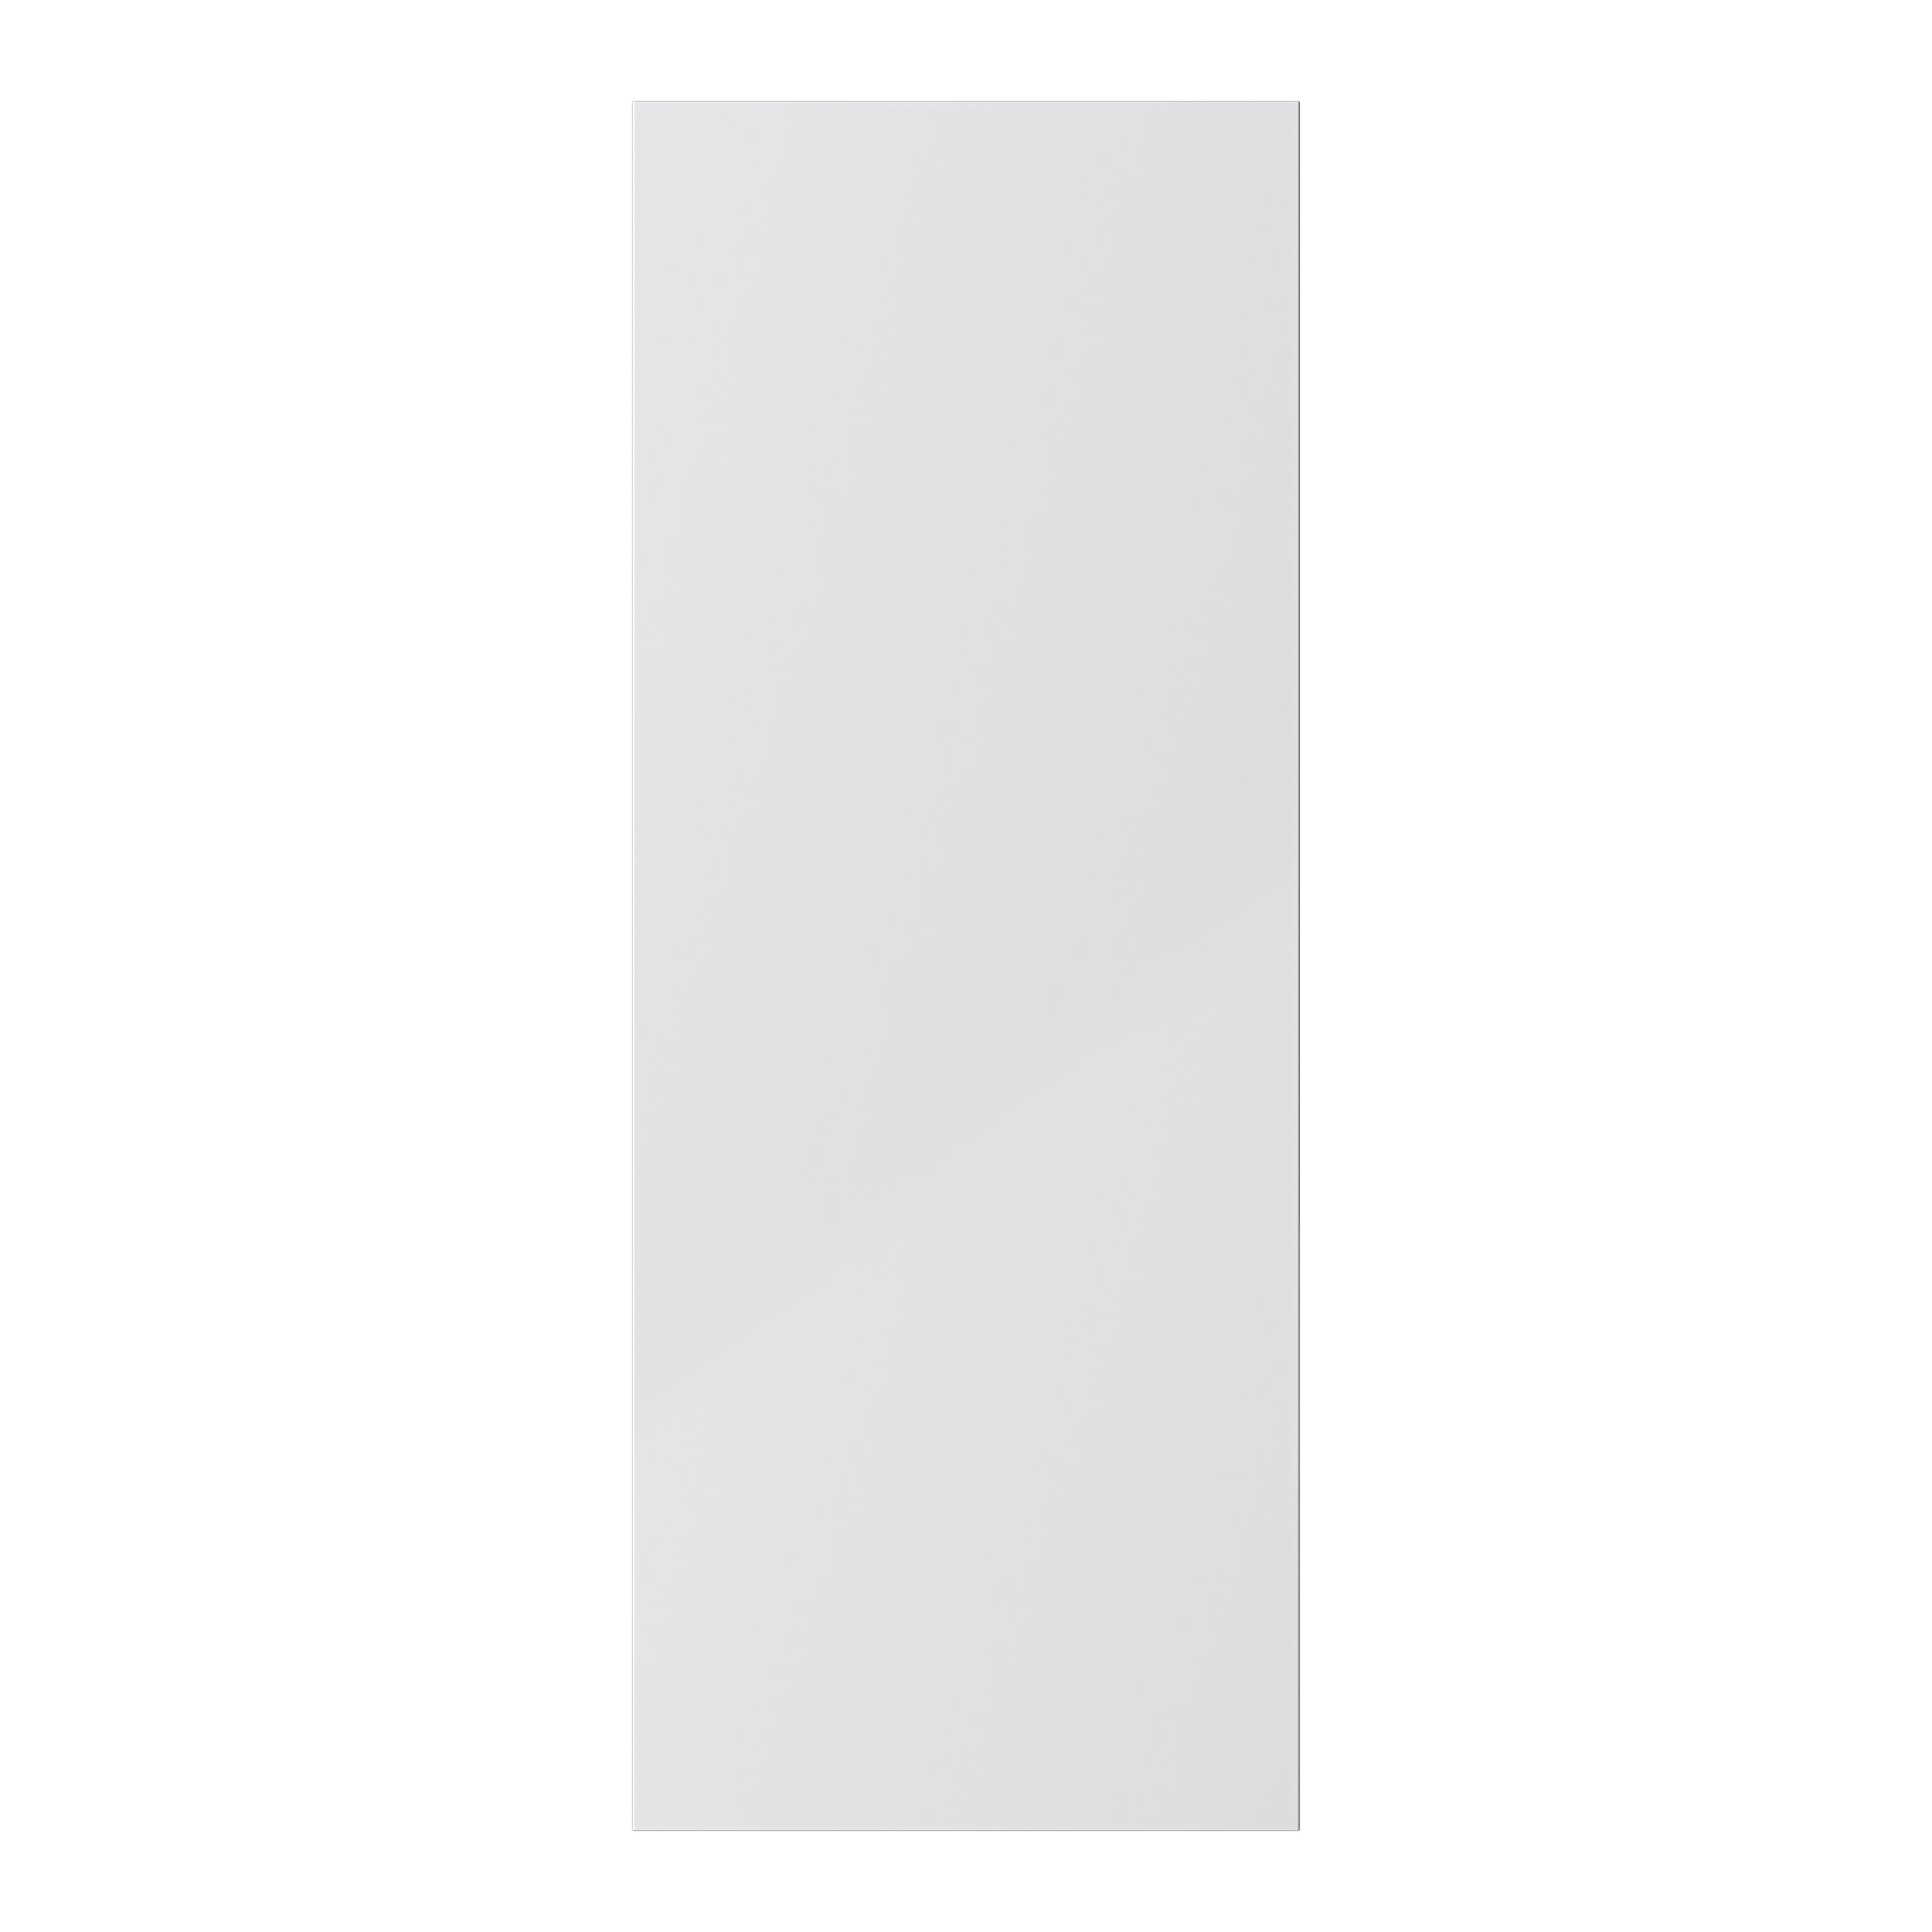 GoodHome Stevia Gloss grey slab Larder Cabinet door (W)500mm (H)1287mm (T)18mm